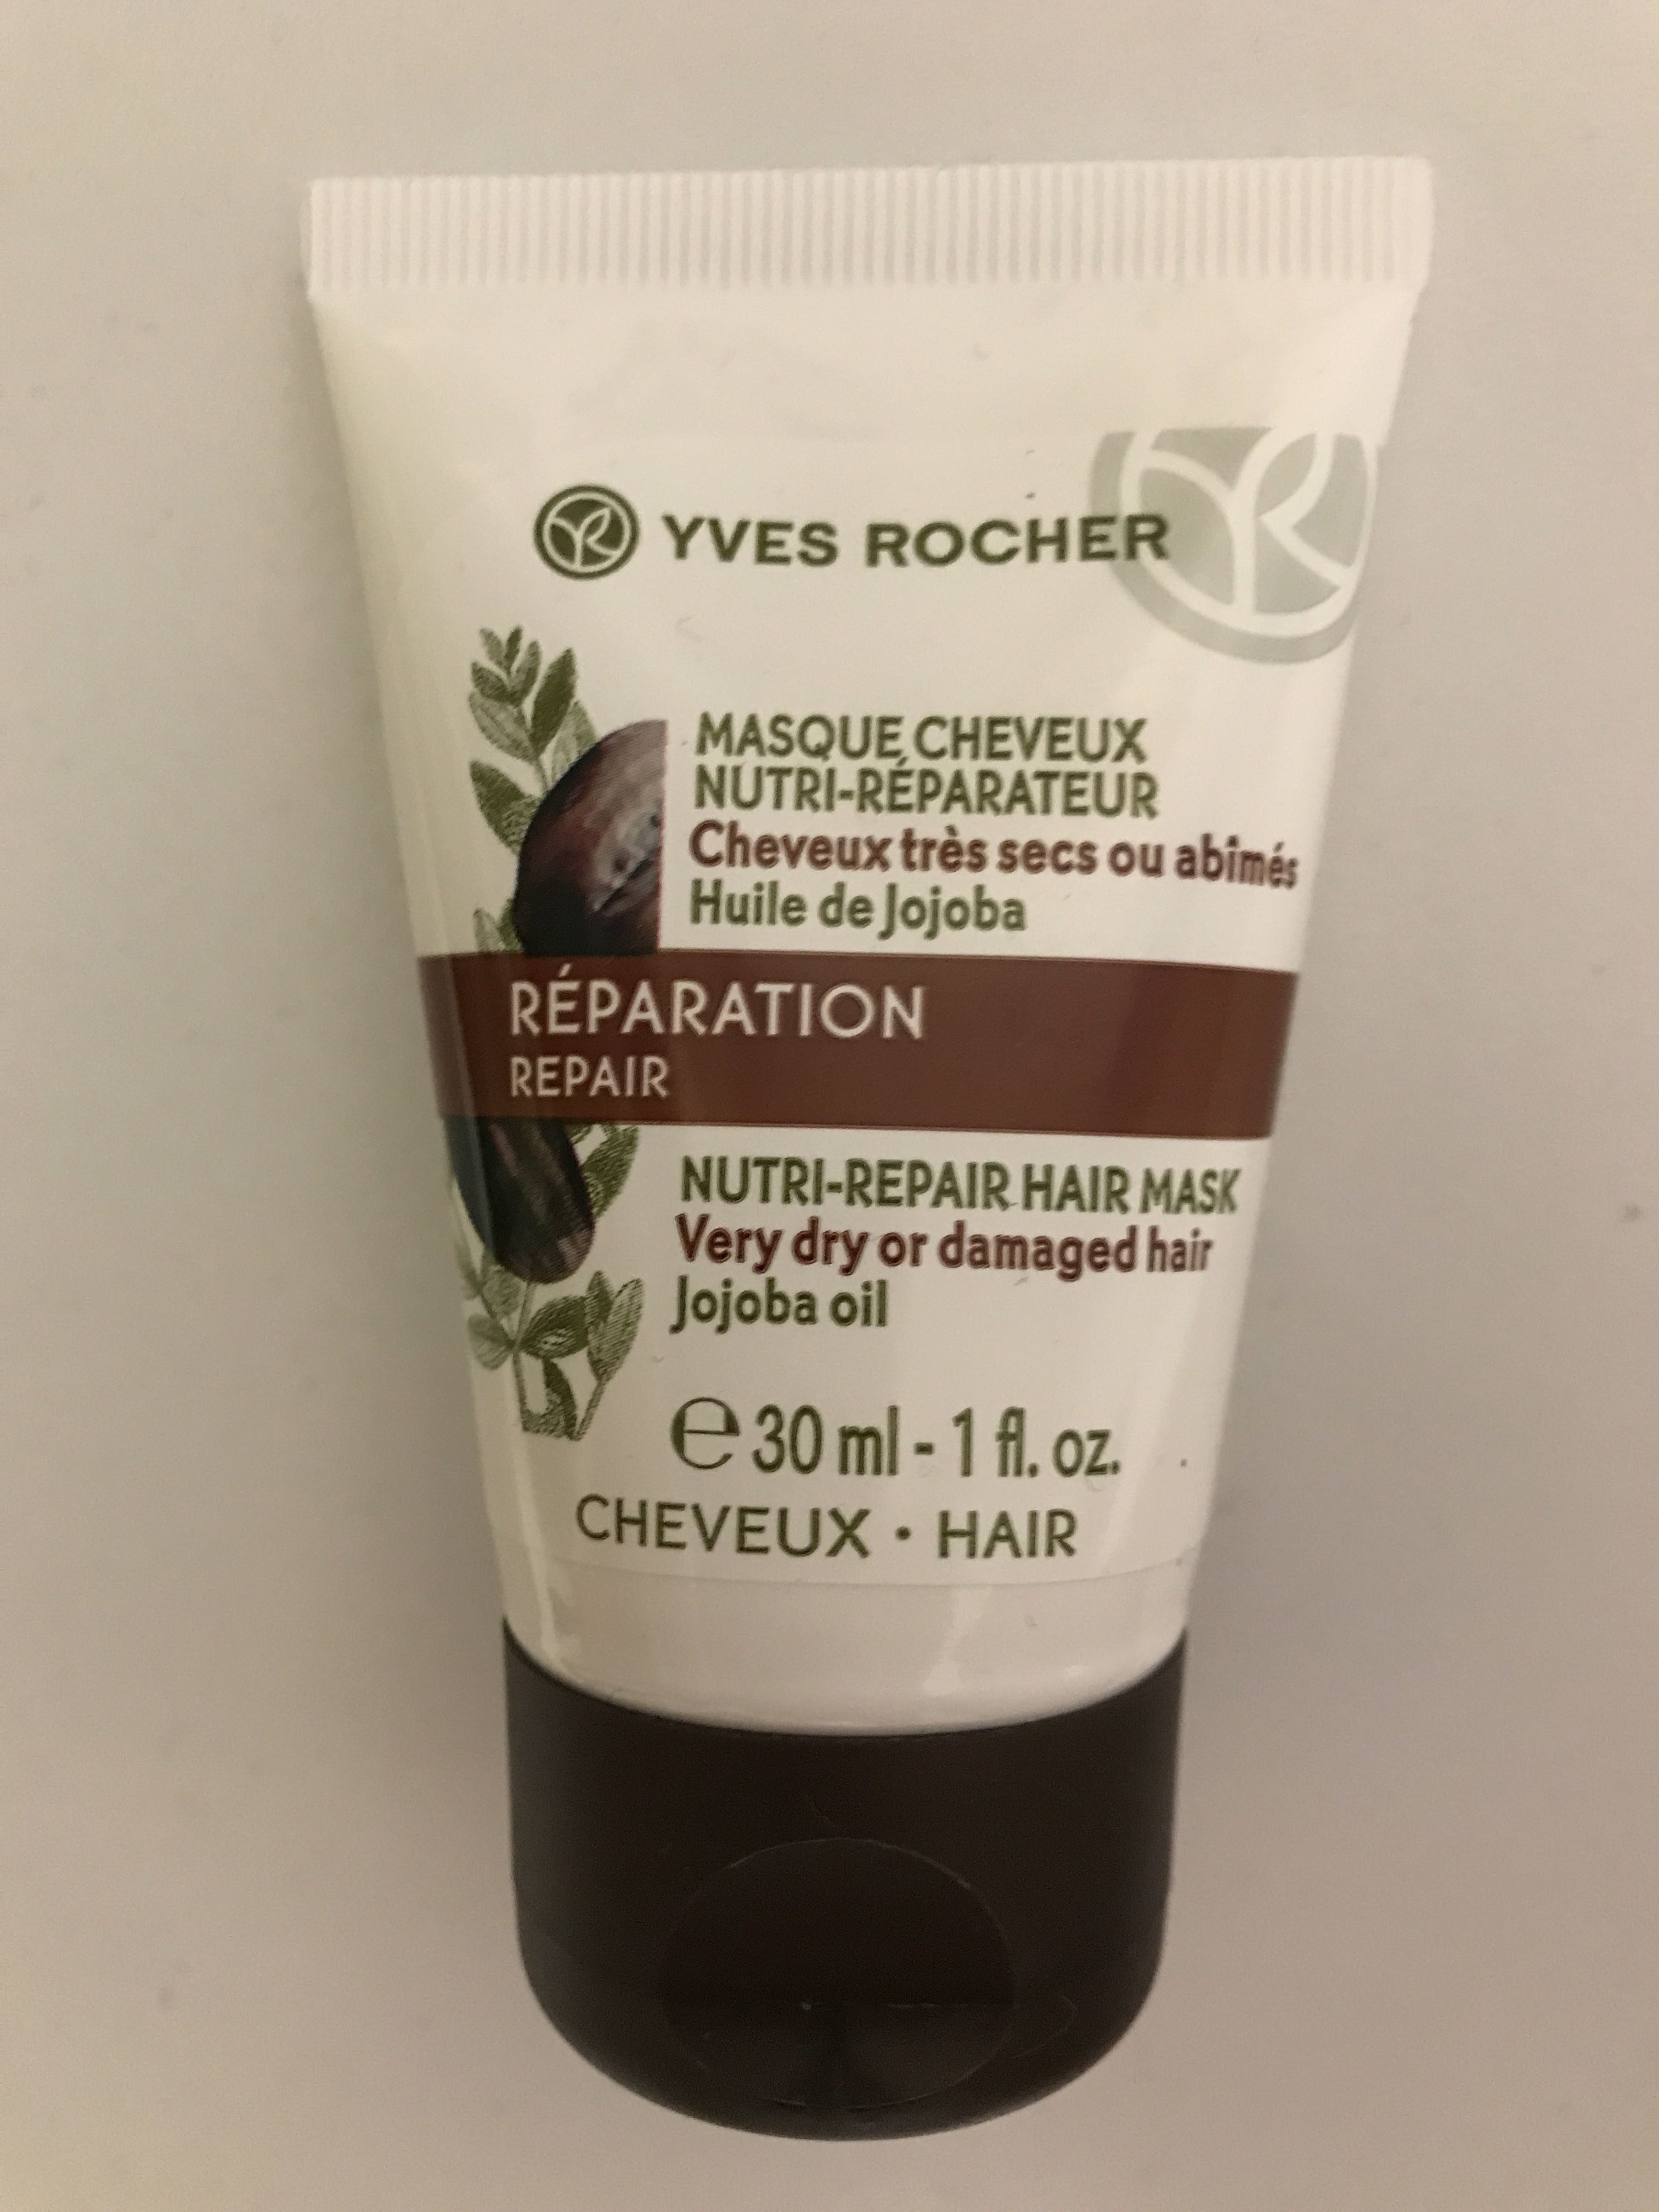 Masque Cheveux Nutri-Reparateur - Produkt - fr